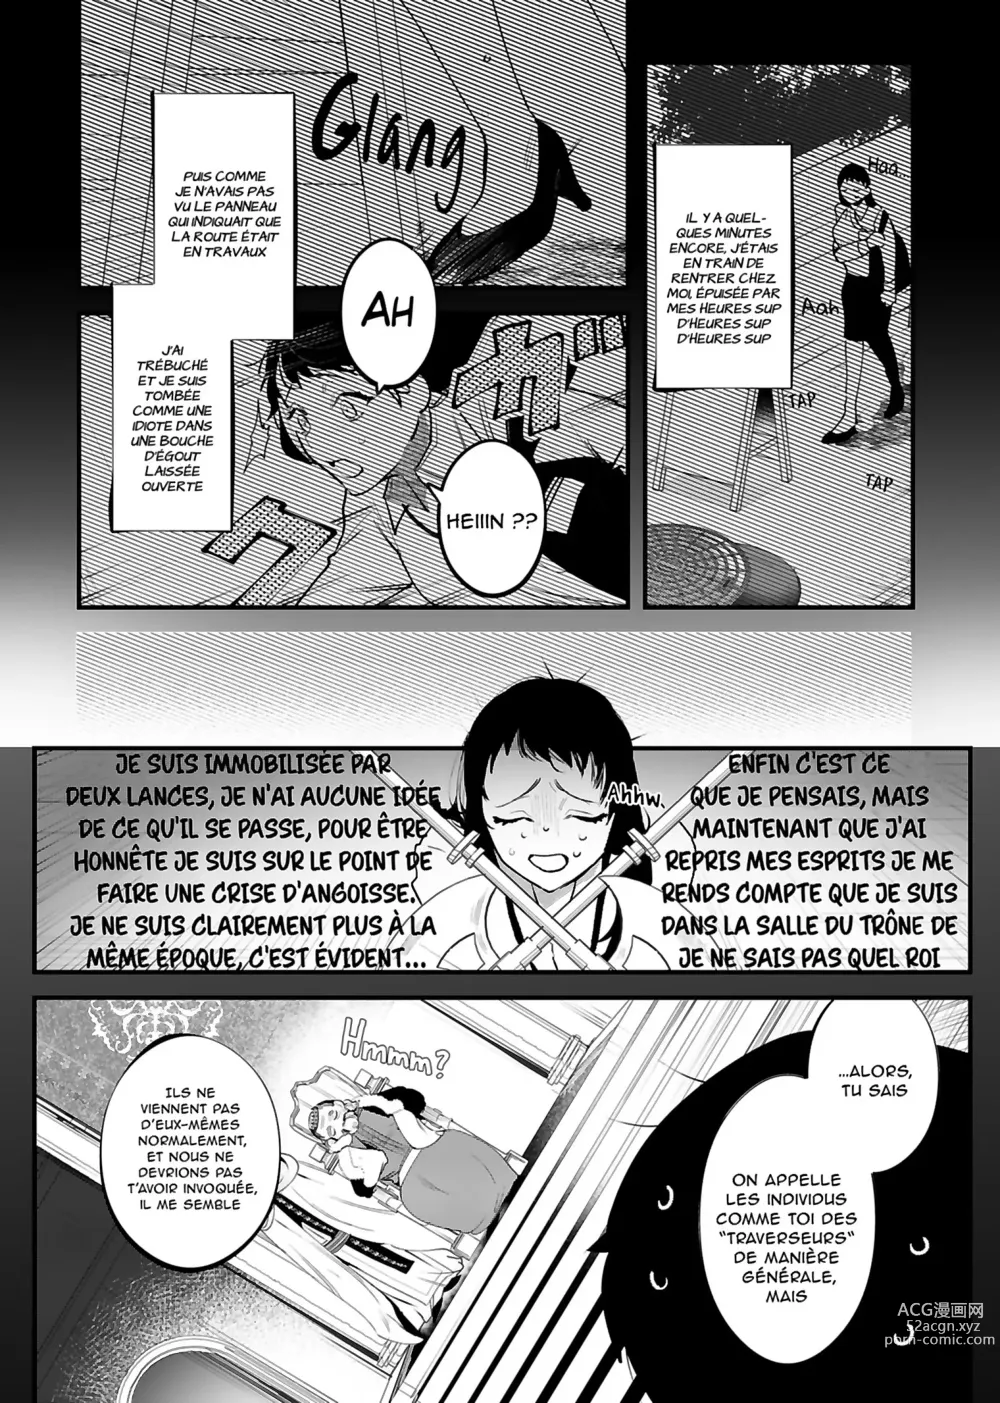 Page 6 of doujinshi Le jeune garçon qui m'a sauvée quand j'ai trébuché dans un autre monde était un meurtrier.